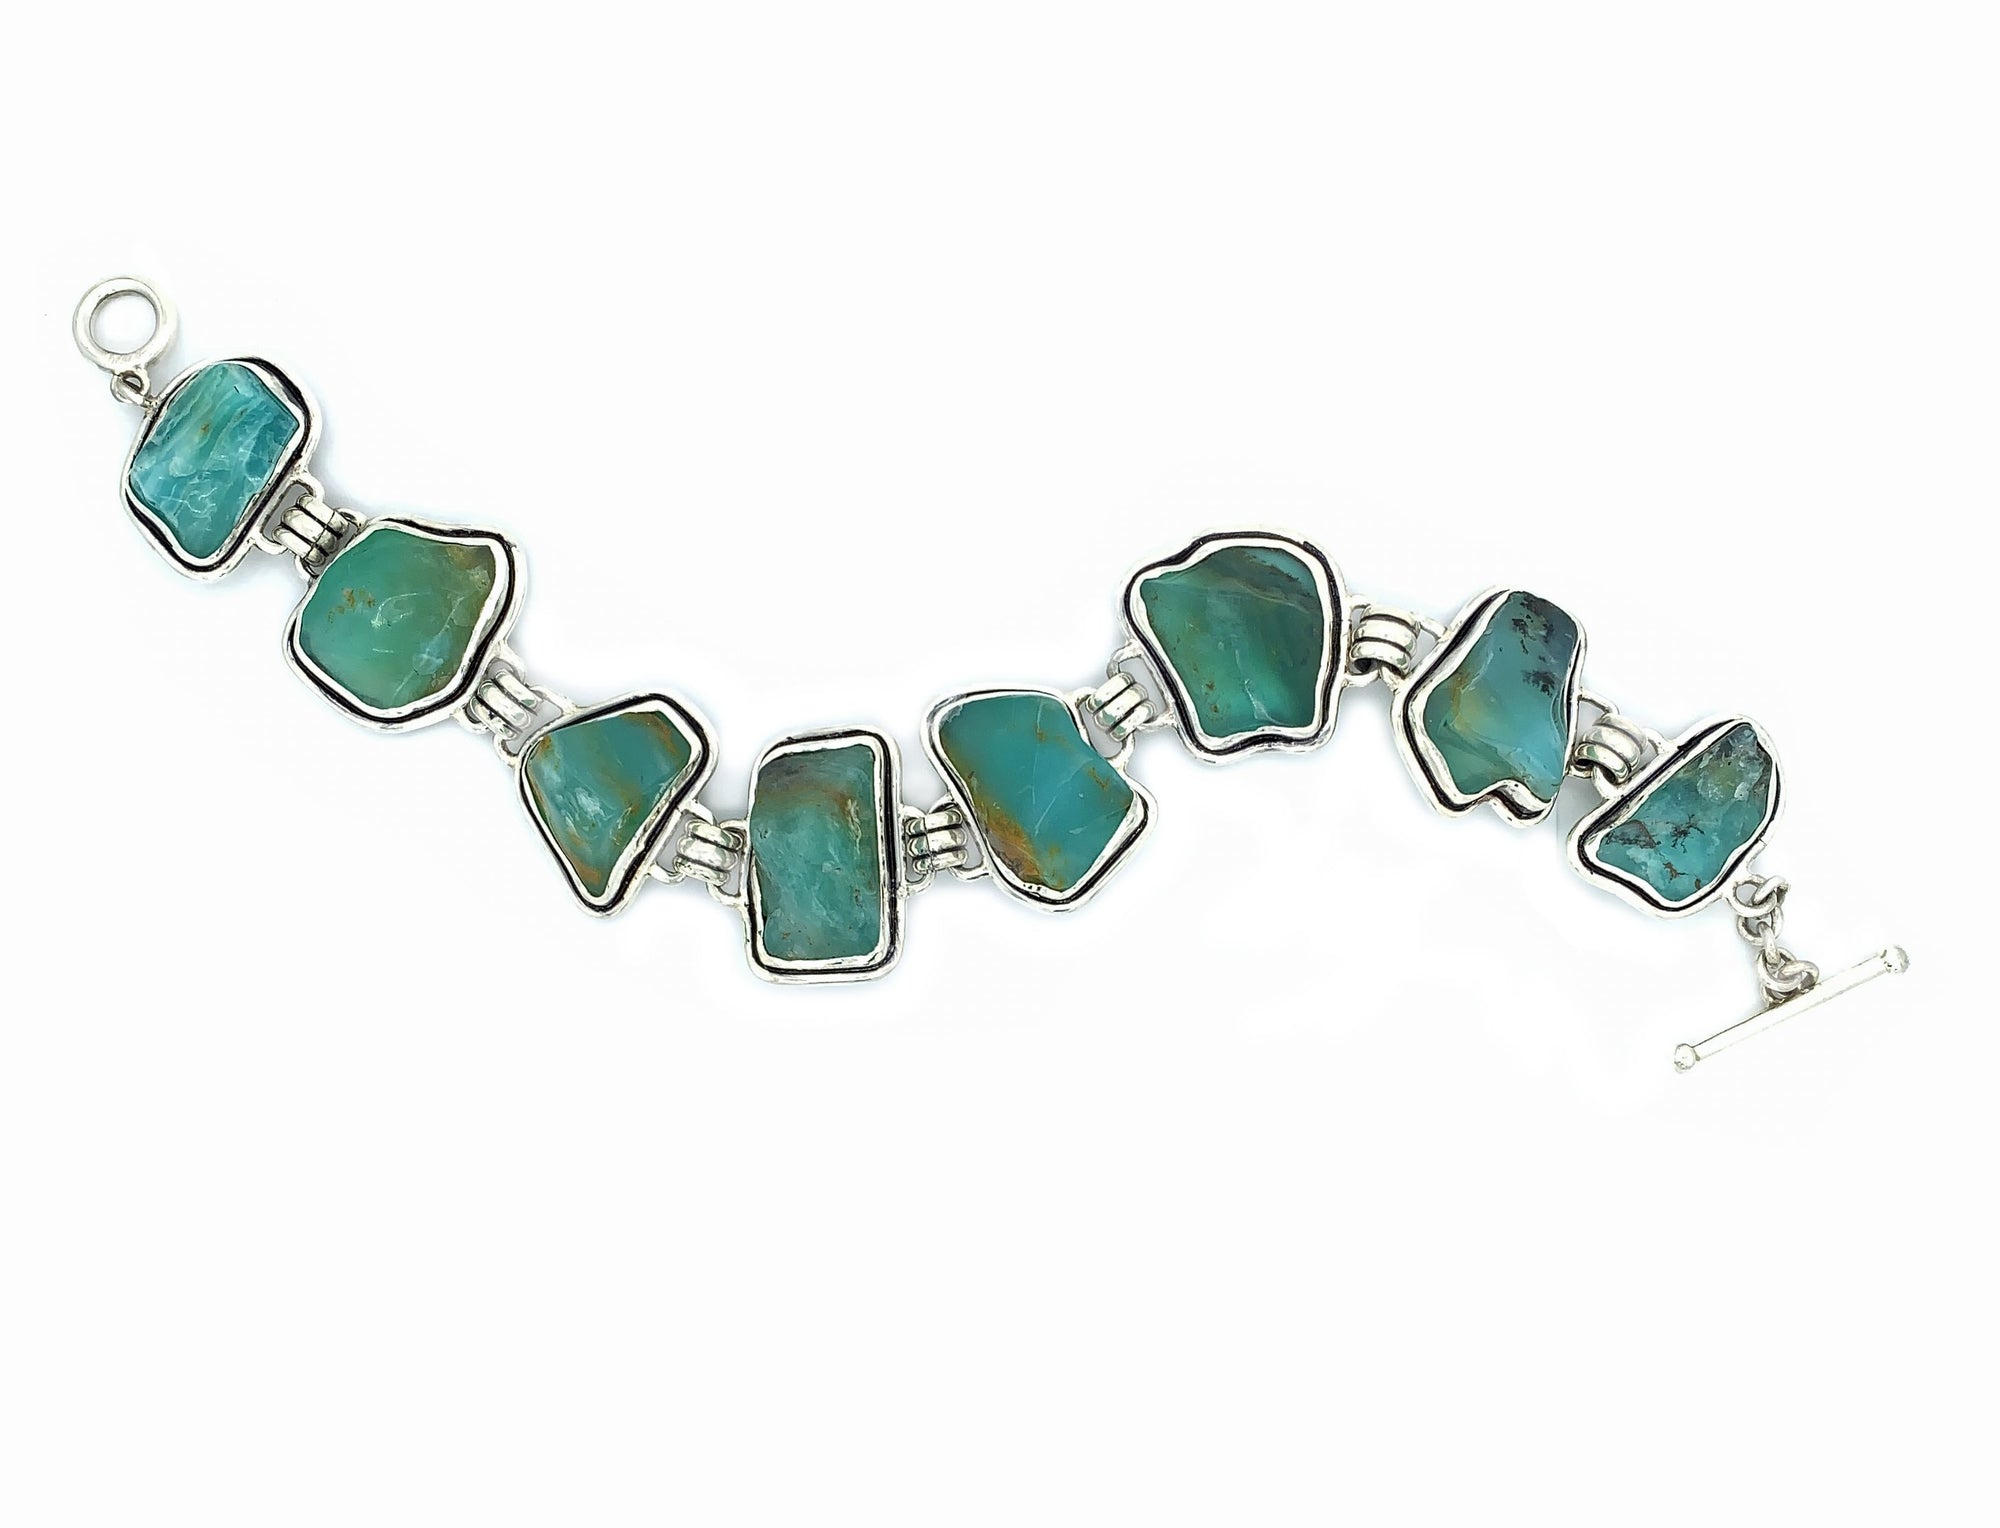 Blue Opal Bracelet in Sterling Silver - Qinti - The Peruvian Shop